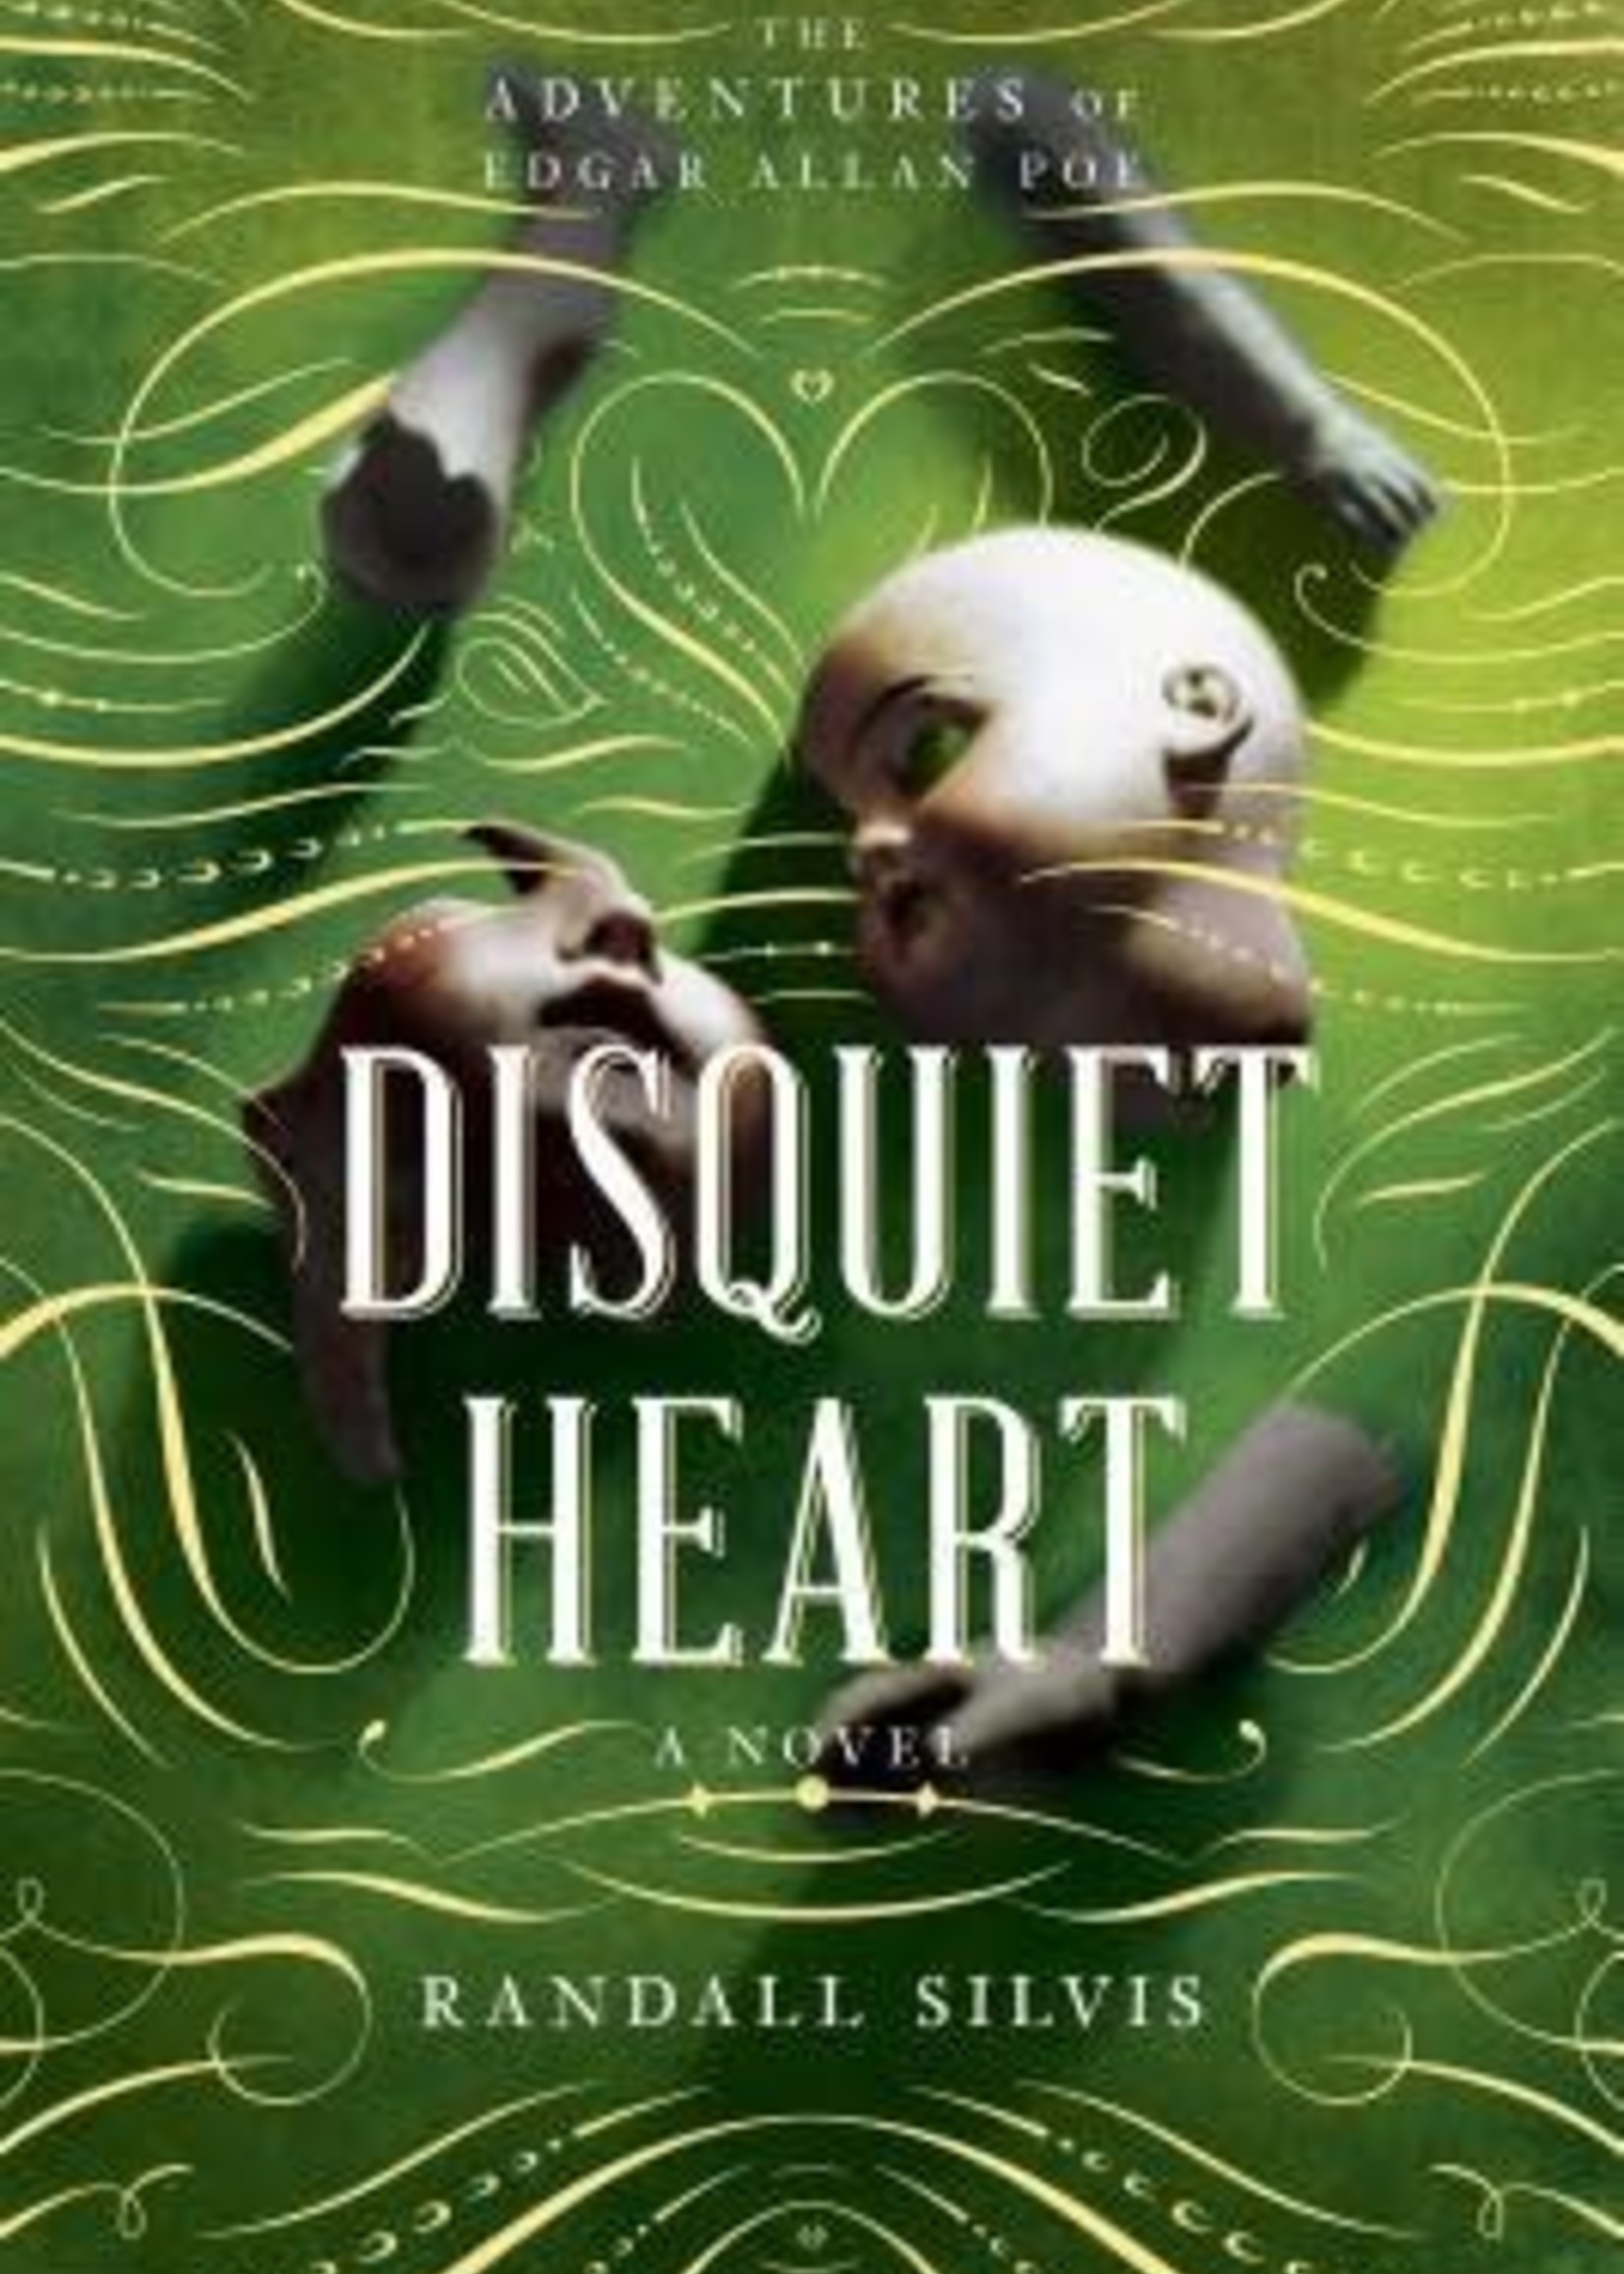 Disquiet Heart (Edgar Allan Poe #2) by Randall Silvis